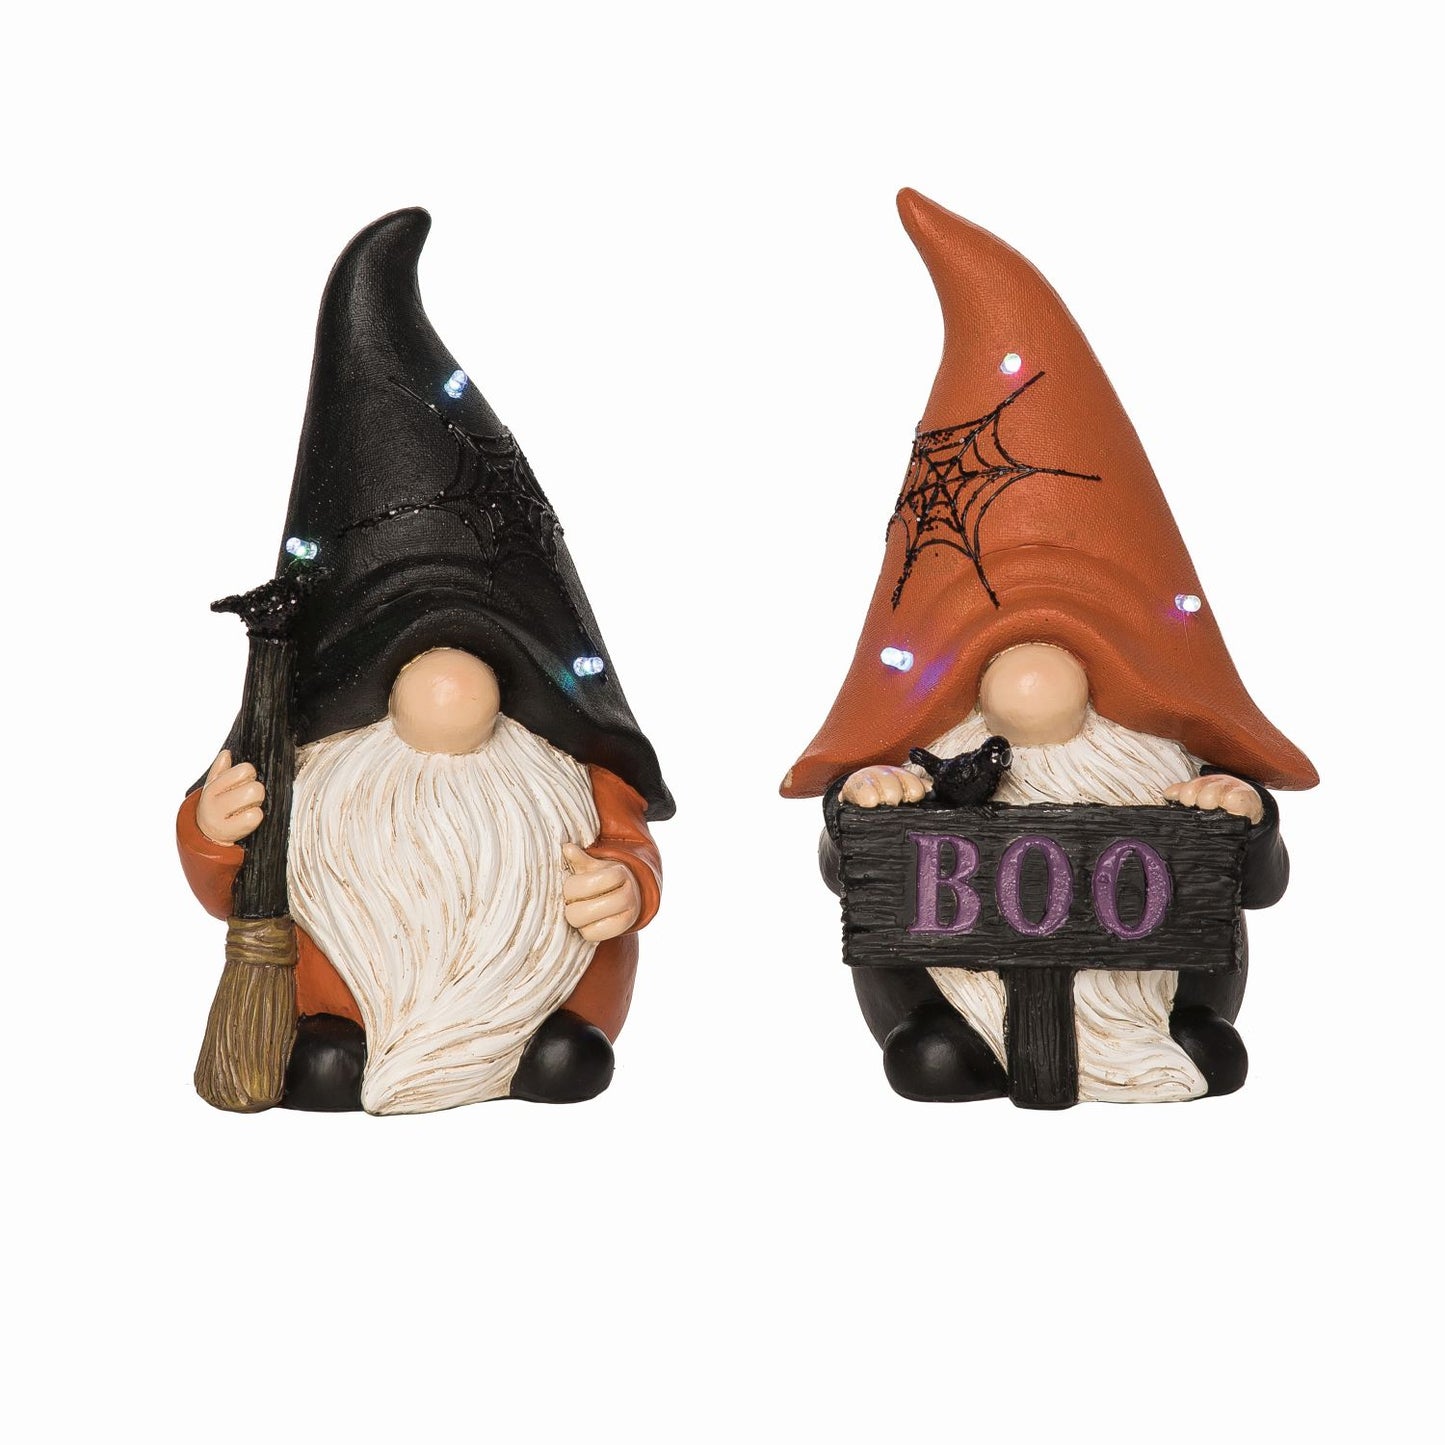 Transpac Light Up Spooky Gnome Figurine, Set Of 2, Assortment